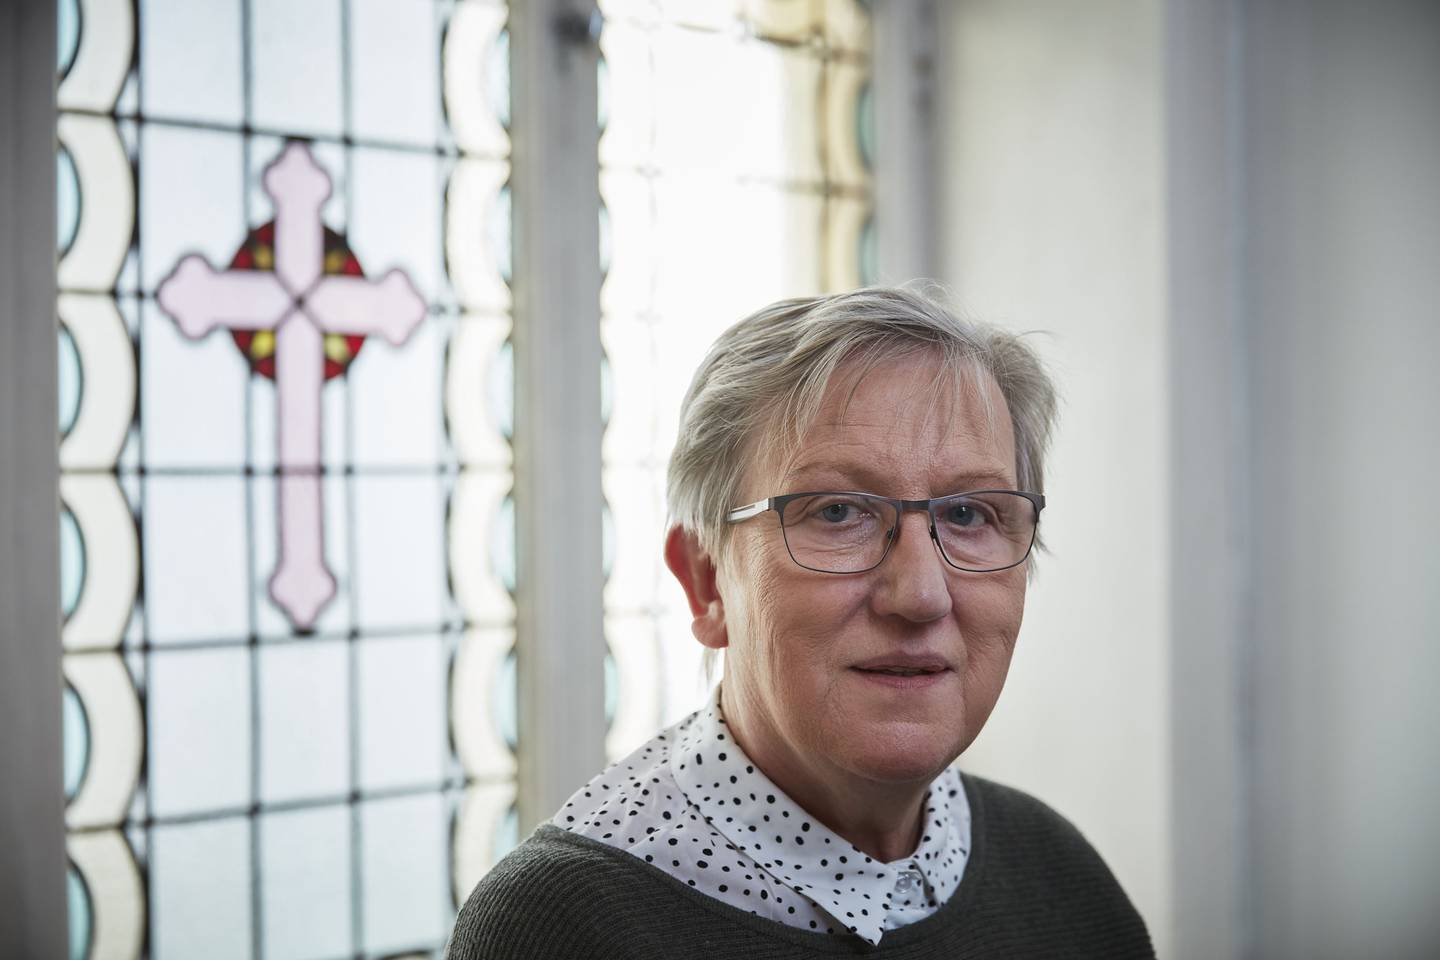 Ewa Bivand startet mandag jobben som prosjektleder i Den katolske kirke. Hun skal jobbe med forebygging av seksuelle overgrep i kirken.